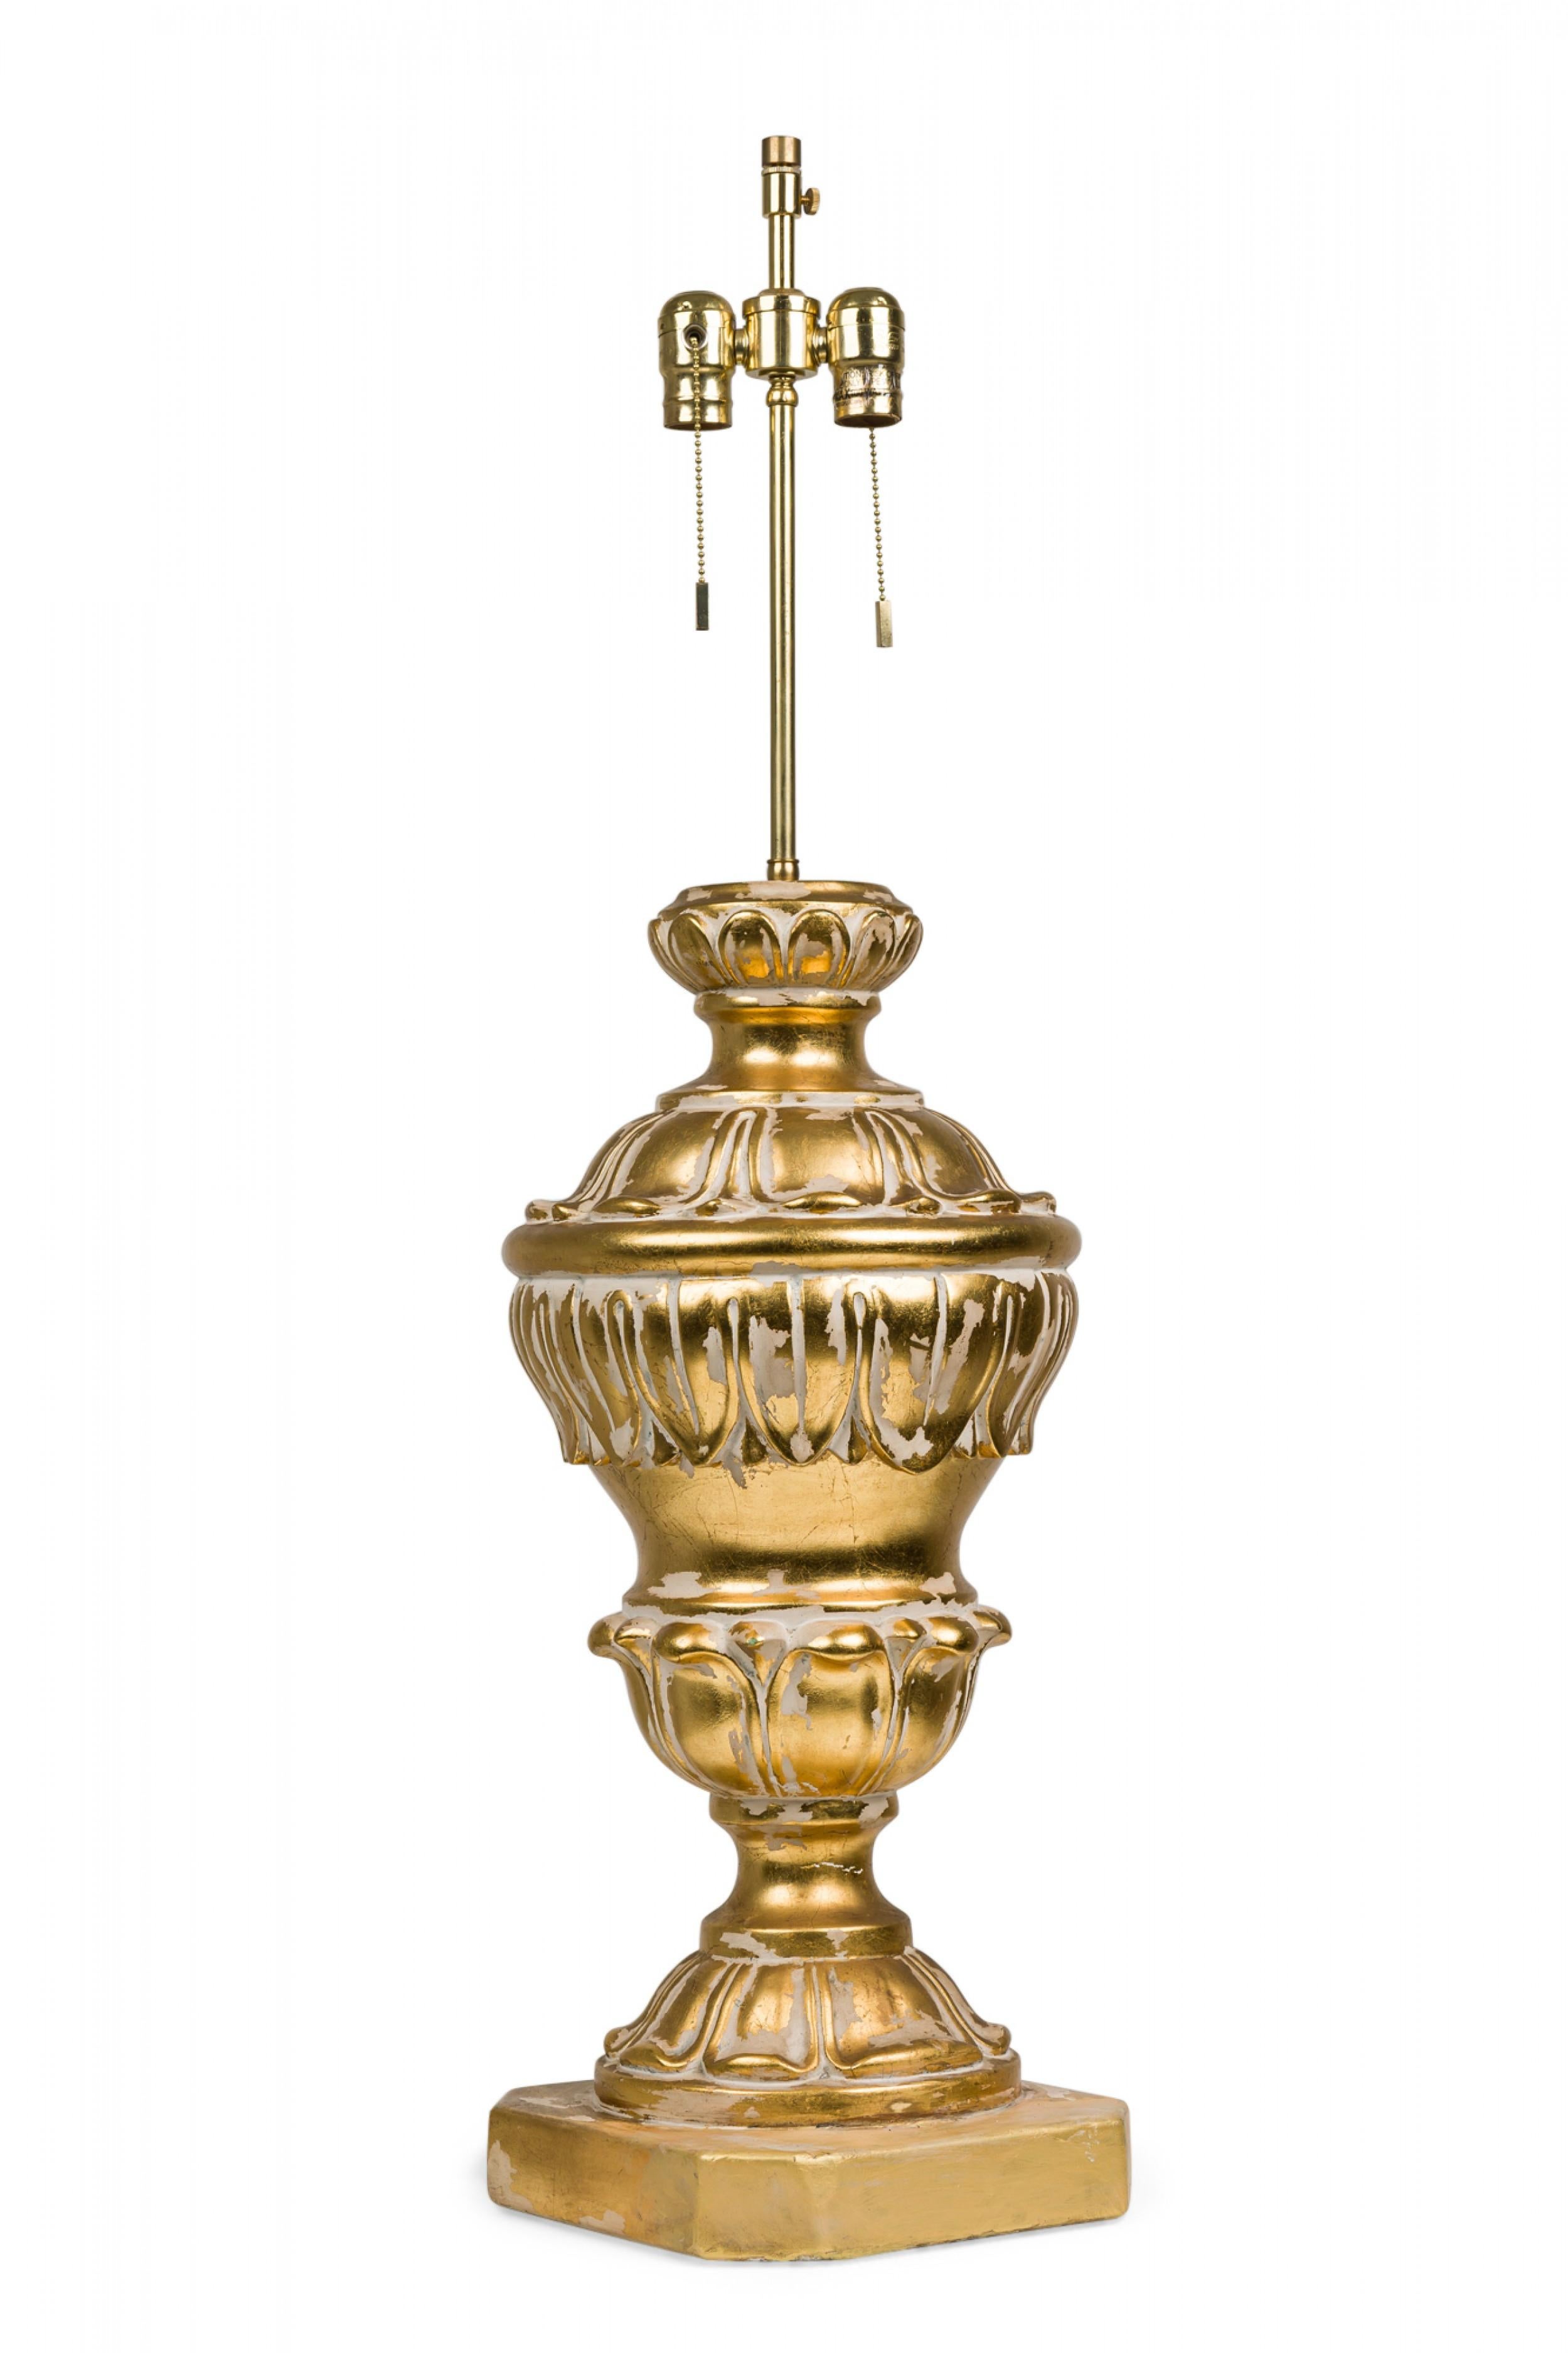 PAIRE de lampes de table en plâtre moulé du milieu du siècle, de forme balustre élaborée, toutes deux avec des tiges en laiton prolongées et des prises d'interrupteur à perles fonctionnelles, moulées en forme de volutes néoclassiques avec des